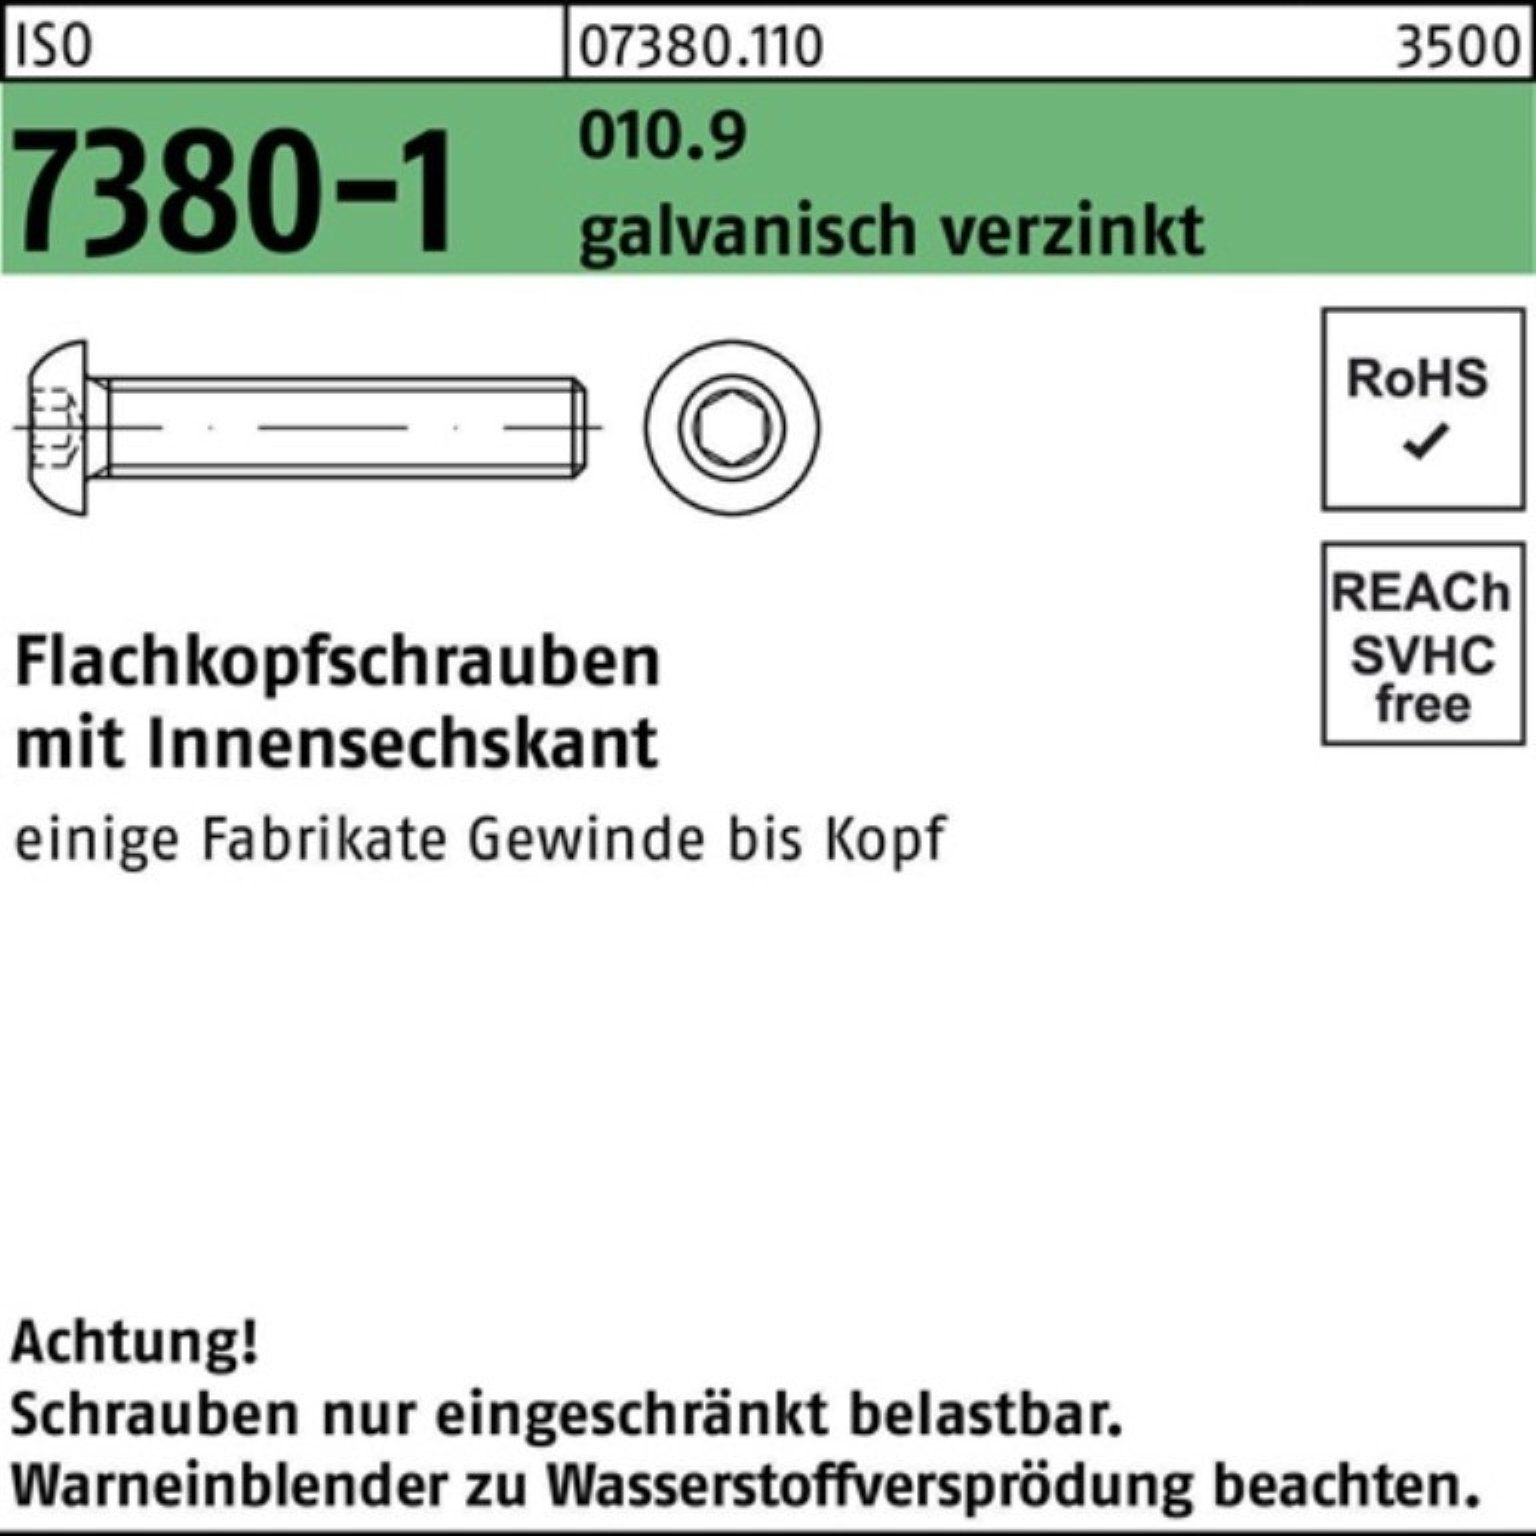 Reyher Schraube 100er Pack Flachkopfschraube 010.9 M12x50 Innen-6kt galv.ve 7380-1 ISO